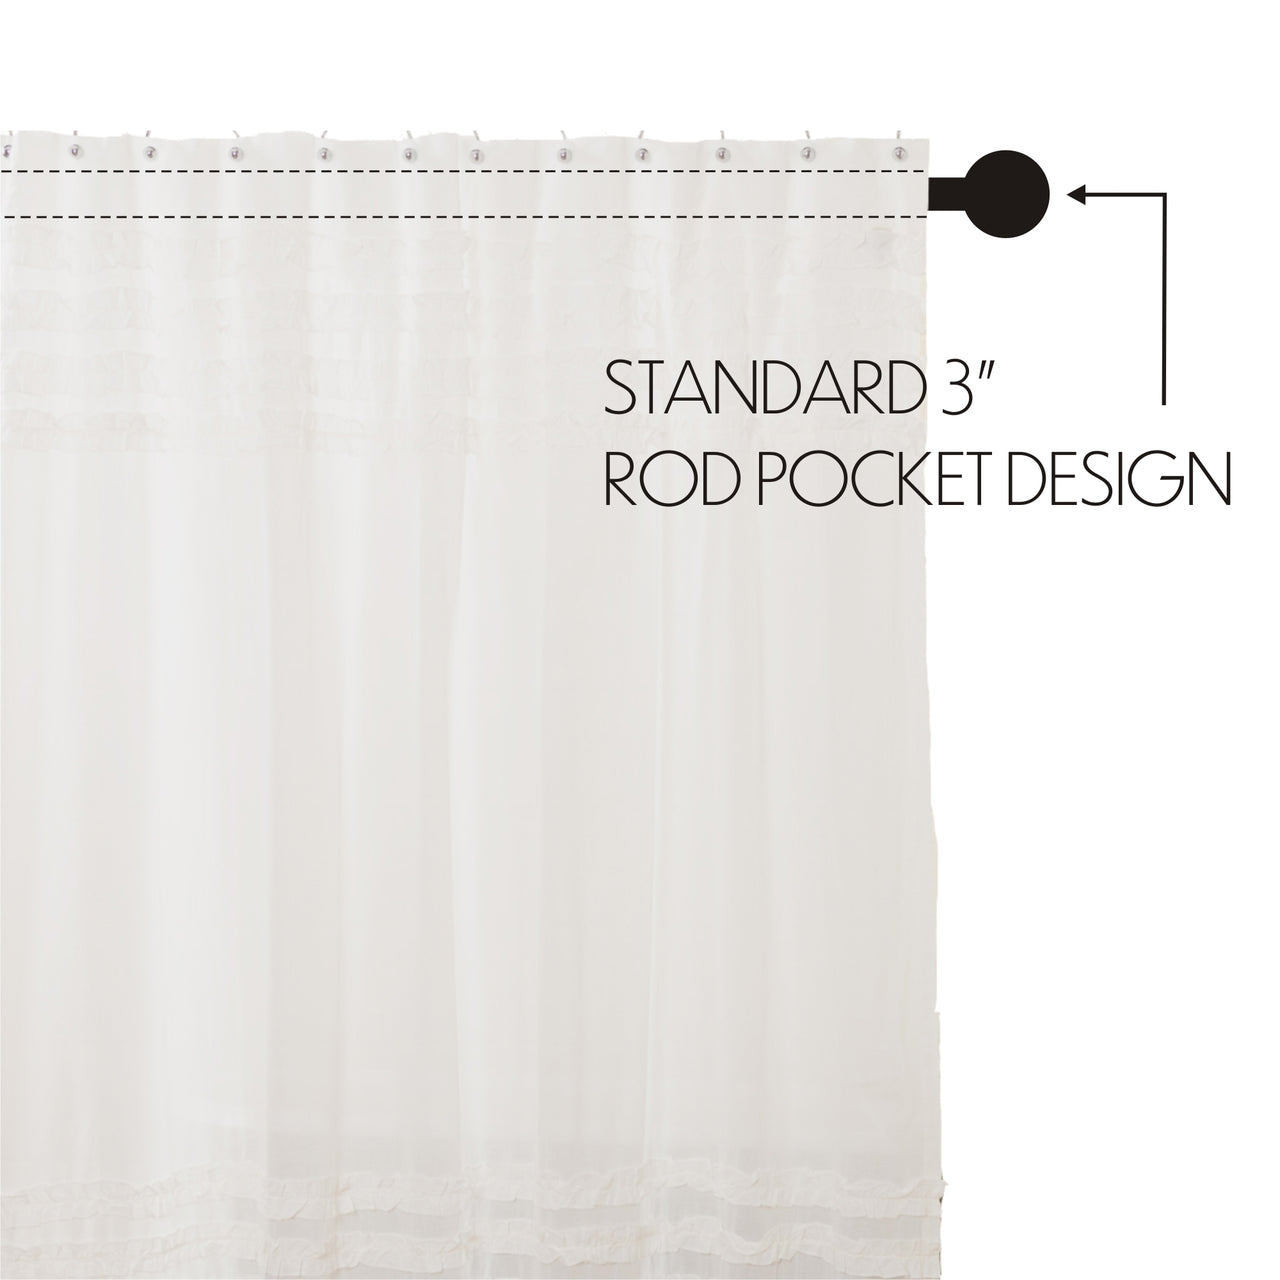 White Ruffled Sheer Petticoat Shower Curtain 72"x72" - VHC Brands